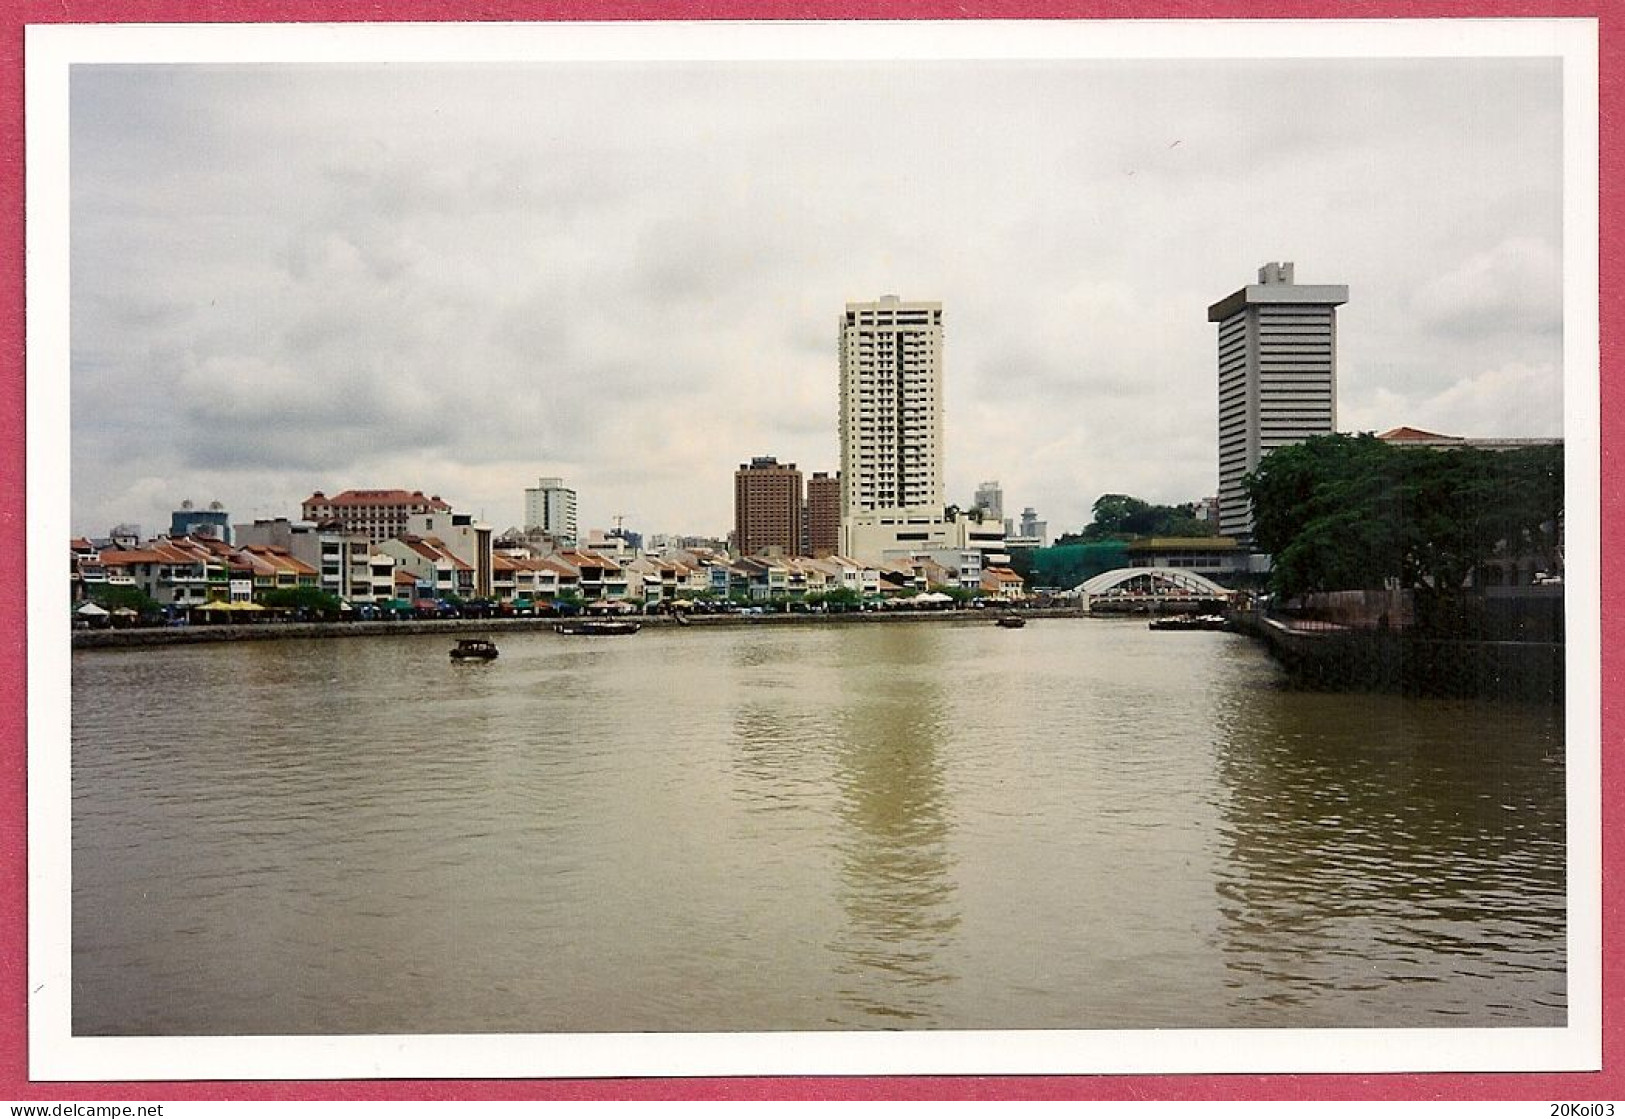 Singapore River And Centre Commercial 1998 Photograph Vintage_UNC SUP_ NOT Postcard_cpc - Singapour